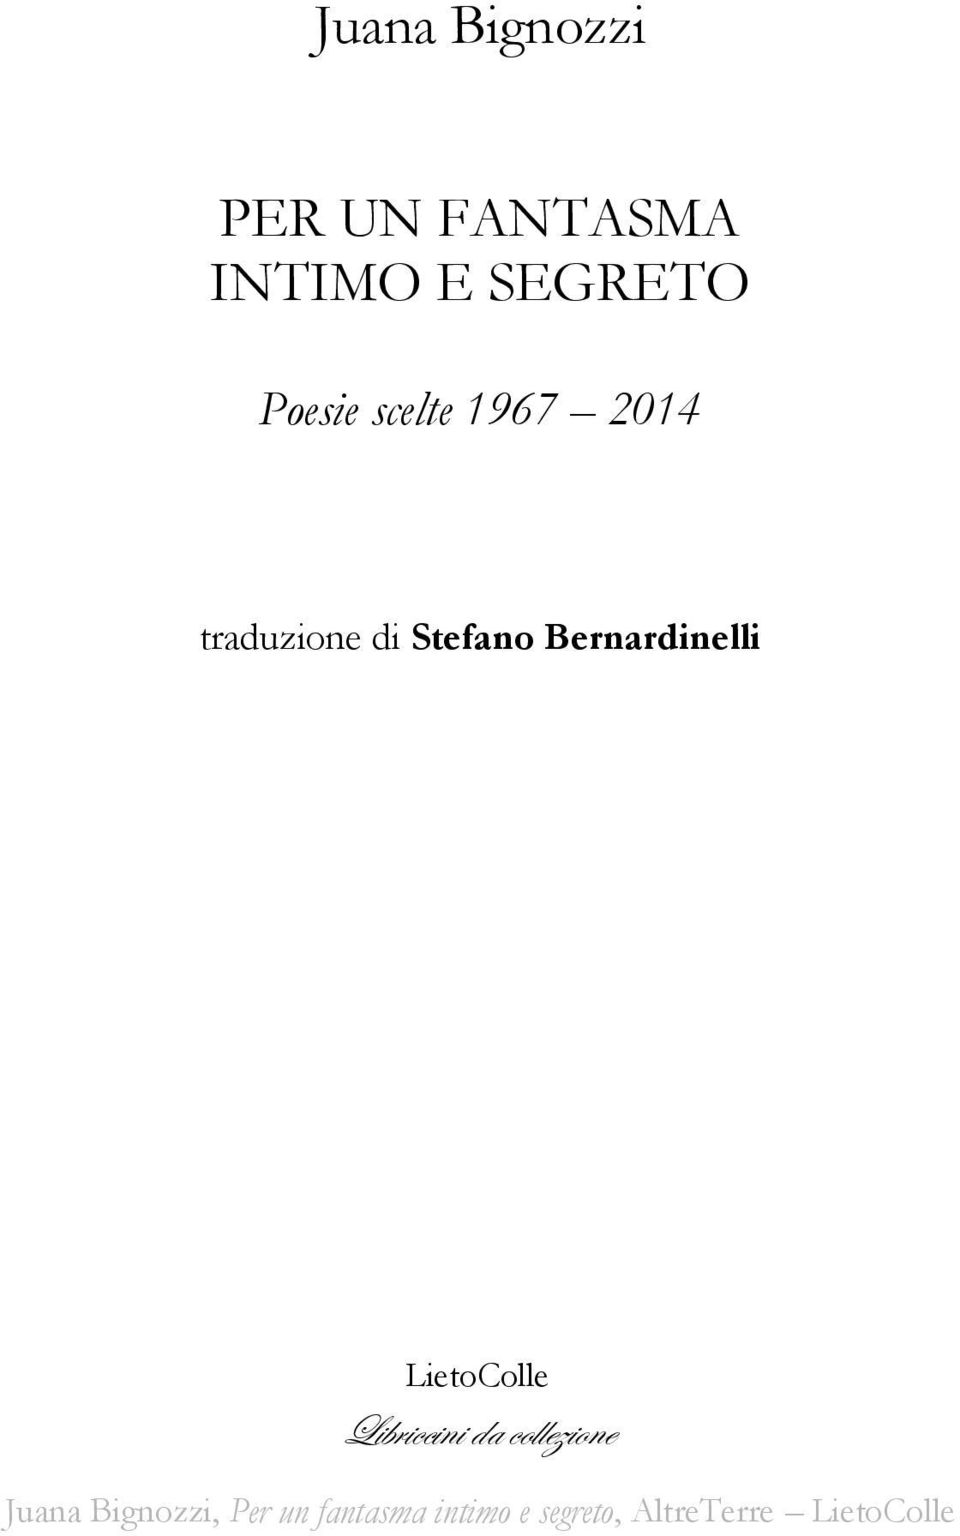 traduzione di Stefano Bernardinelli